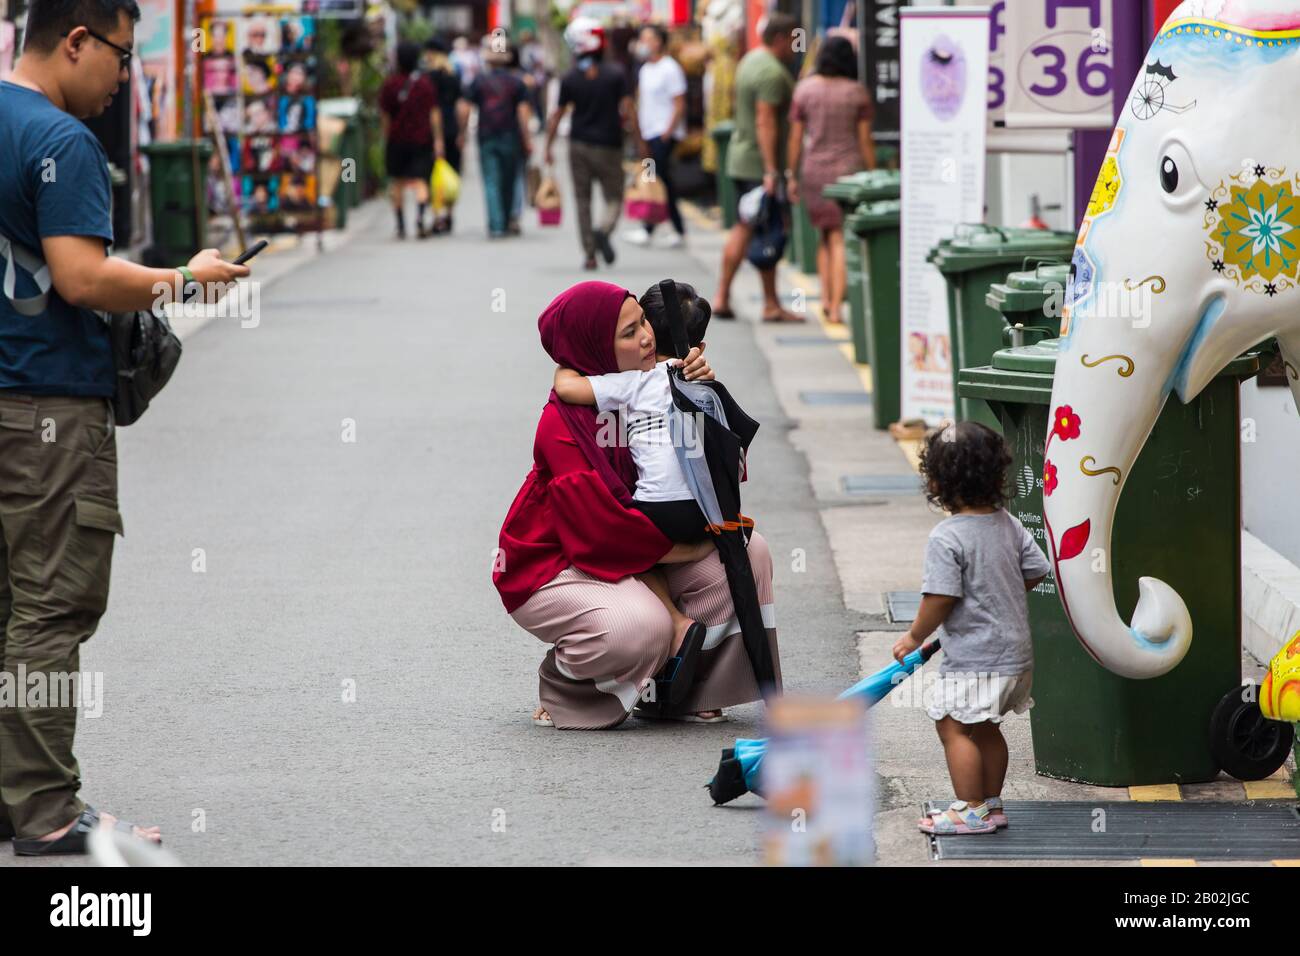 Une mère musulmane malais dans le hijab rouge s'est emparée pour embrasser son enfant dans la rue. Singapour. Banque D'Images